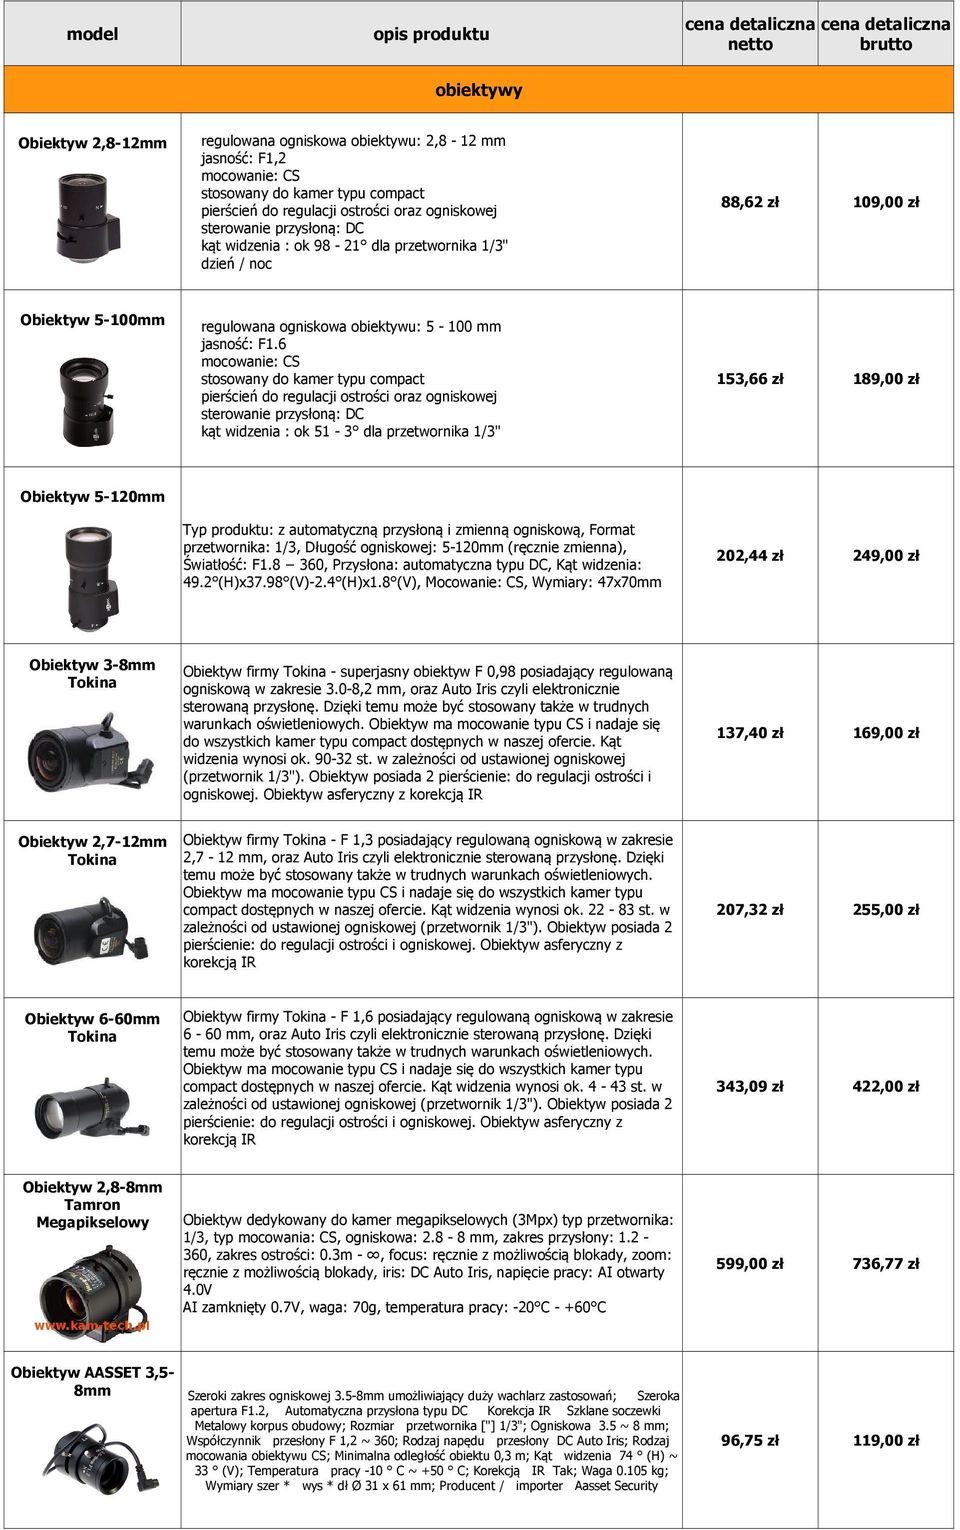 6 mocowanie: CS stosowany do kamer typu compact pierścień do regulacji ostrości oraz ogniskowej sterowanie przysłoną: DC kąt widzenia : ok 51-3 dla przetwornika 1/3" 153,66 zł 189,00 zł Obiektyw